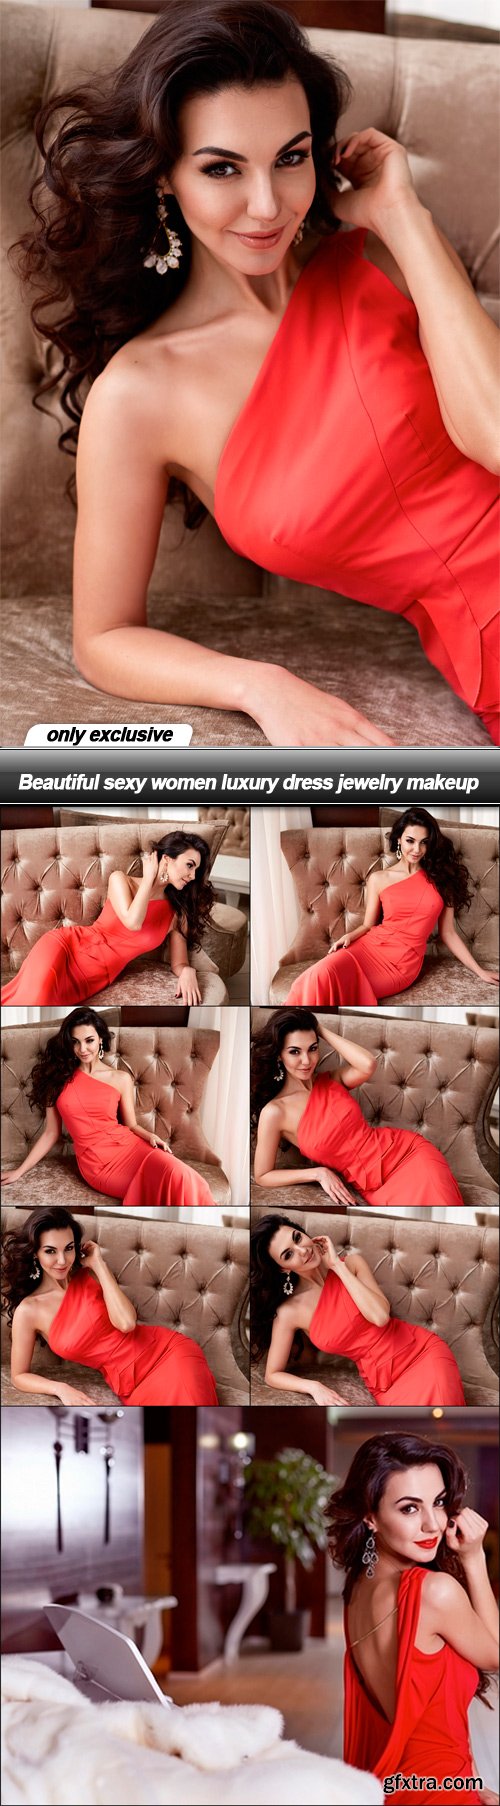 Beautiful sexy women luxury dress jewelry makeup - 8 UHQ JPEG